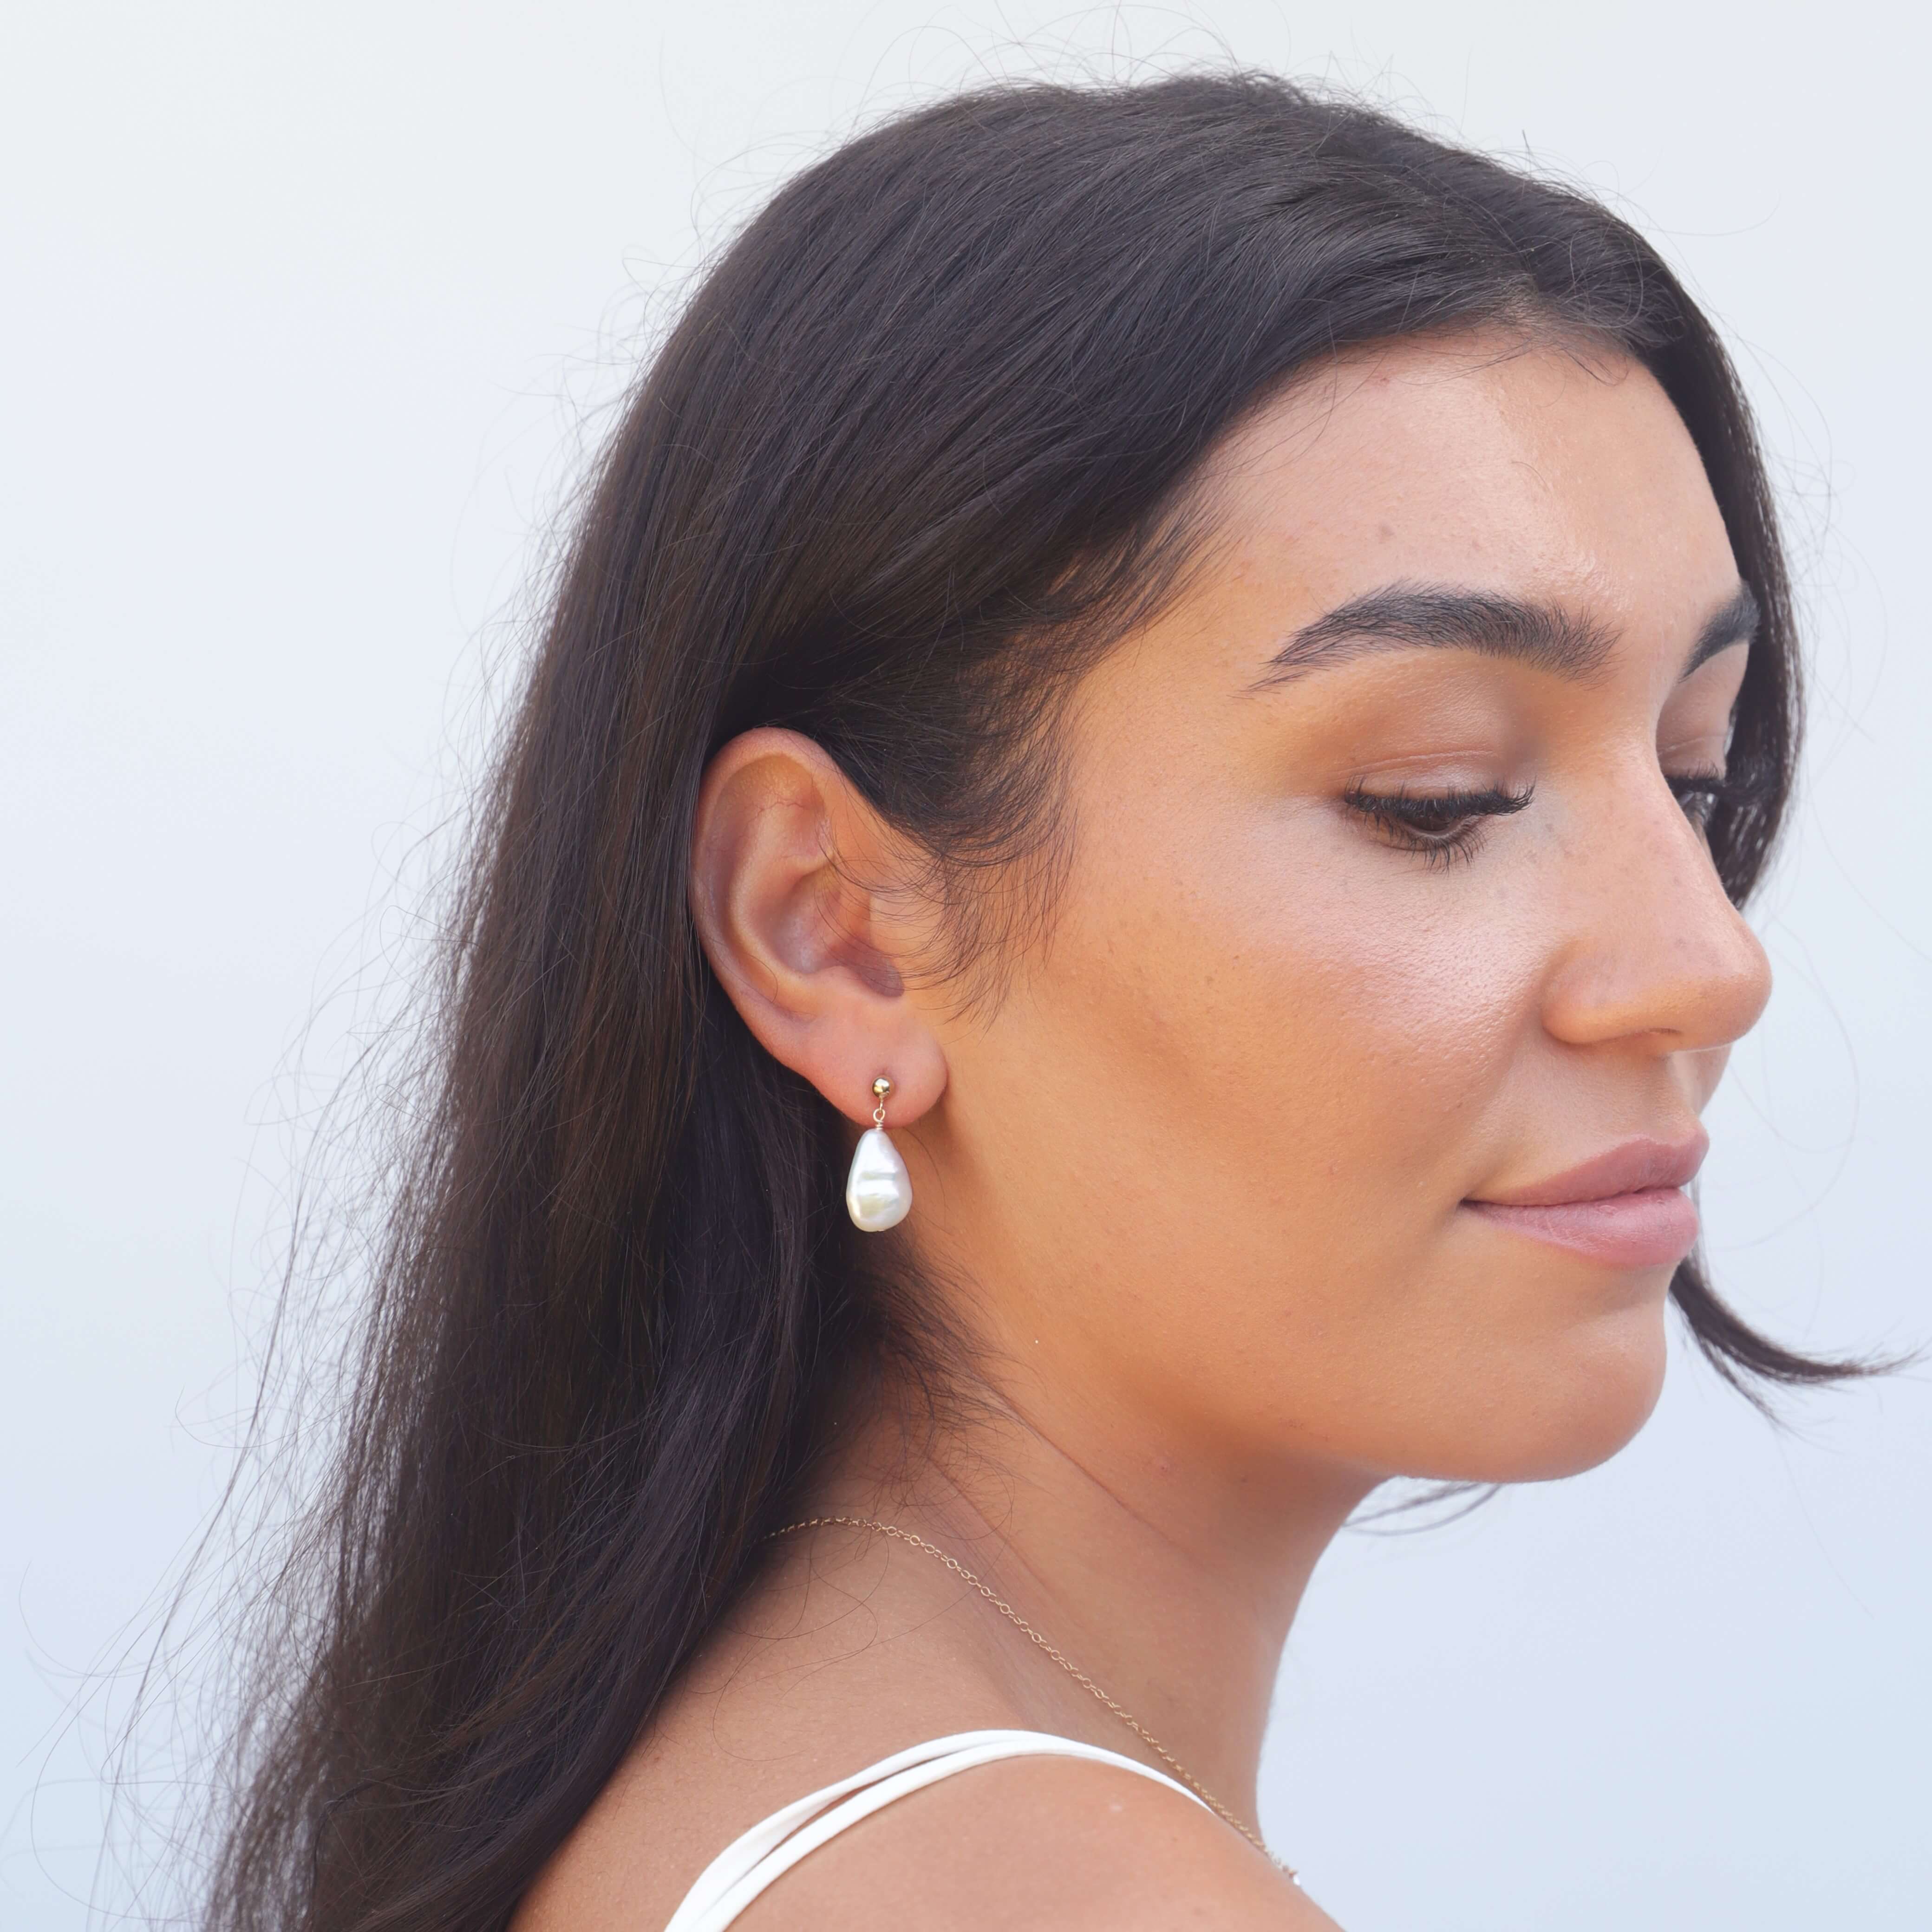 Headshot of model wearing teardrop shaped pearl earring